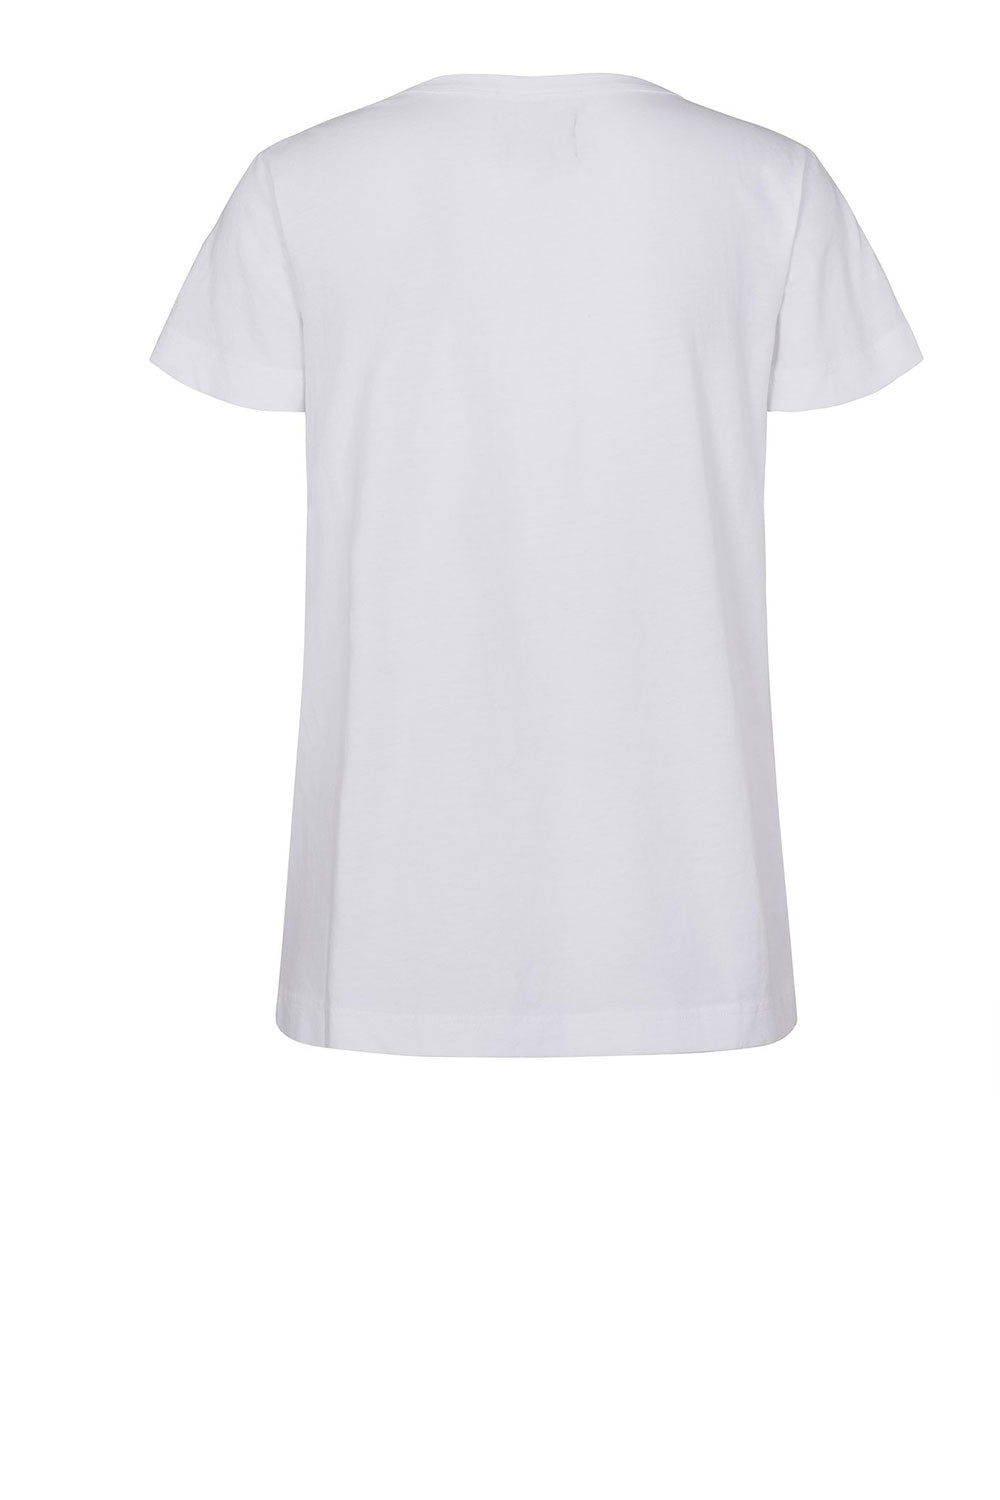 Signe T-shirt White